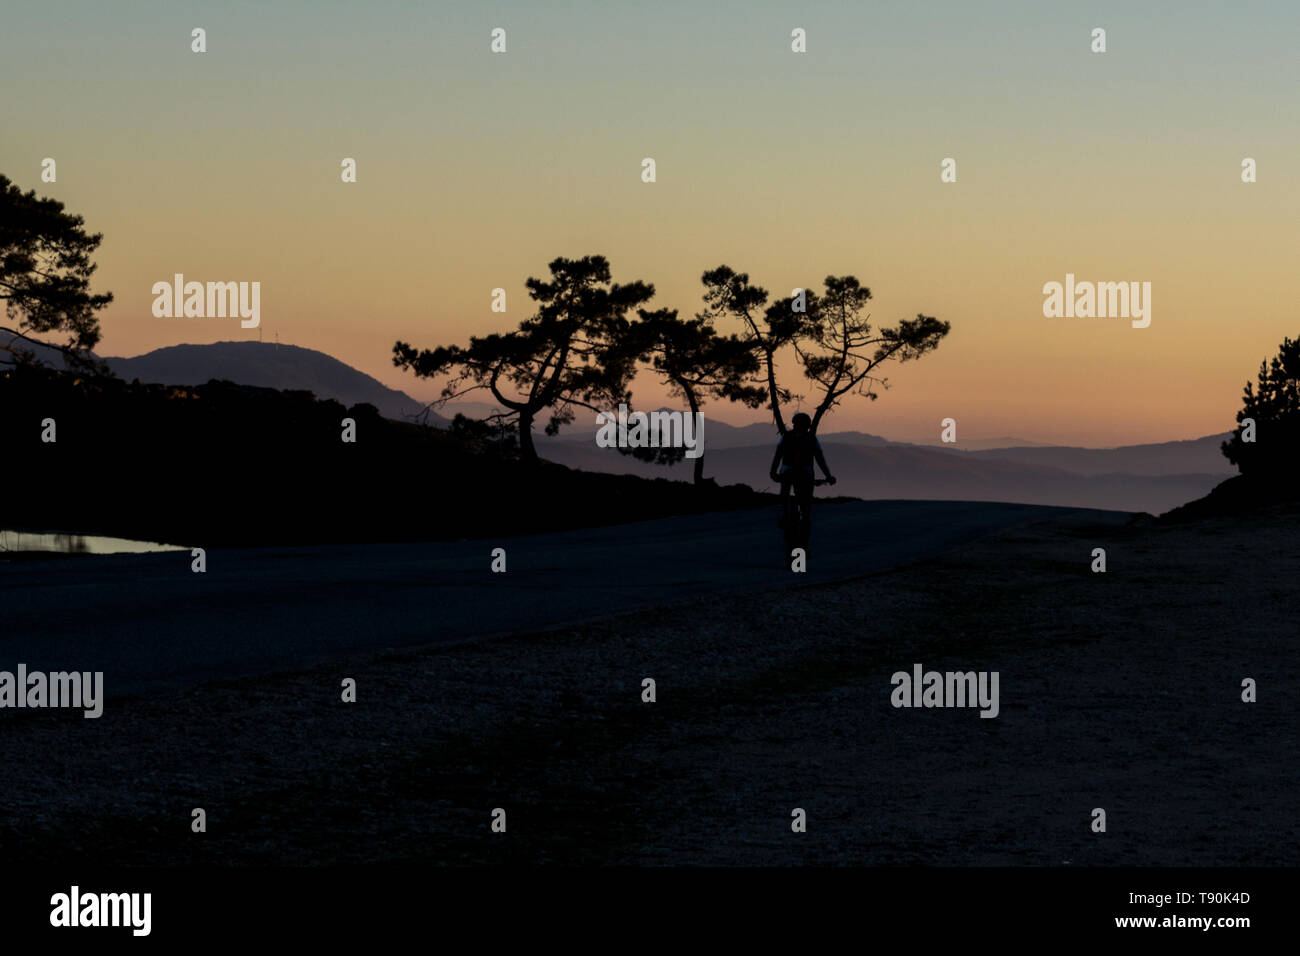 Silhouette di un uomo in sella ad una bicicletta su per la montagna al tramonto Foto Stock